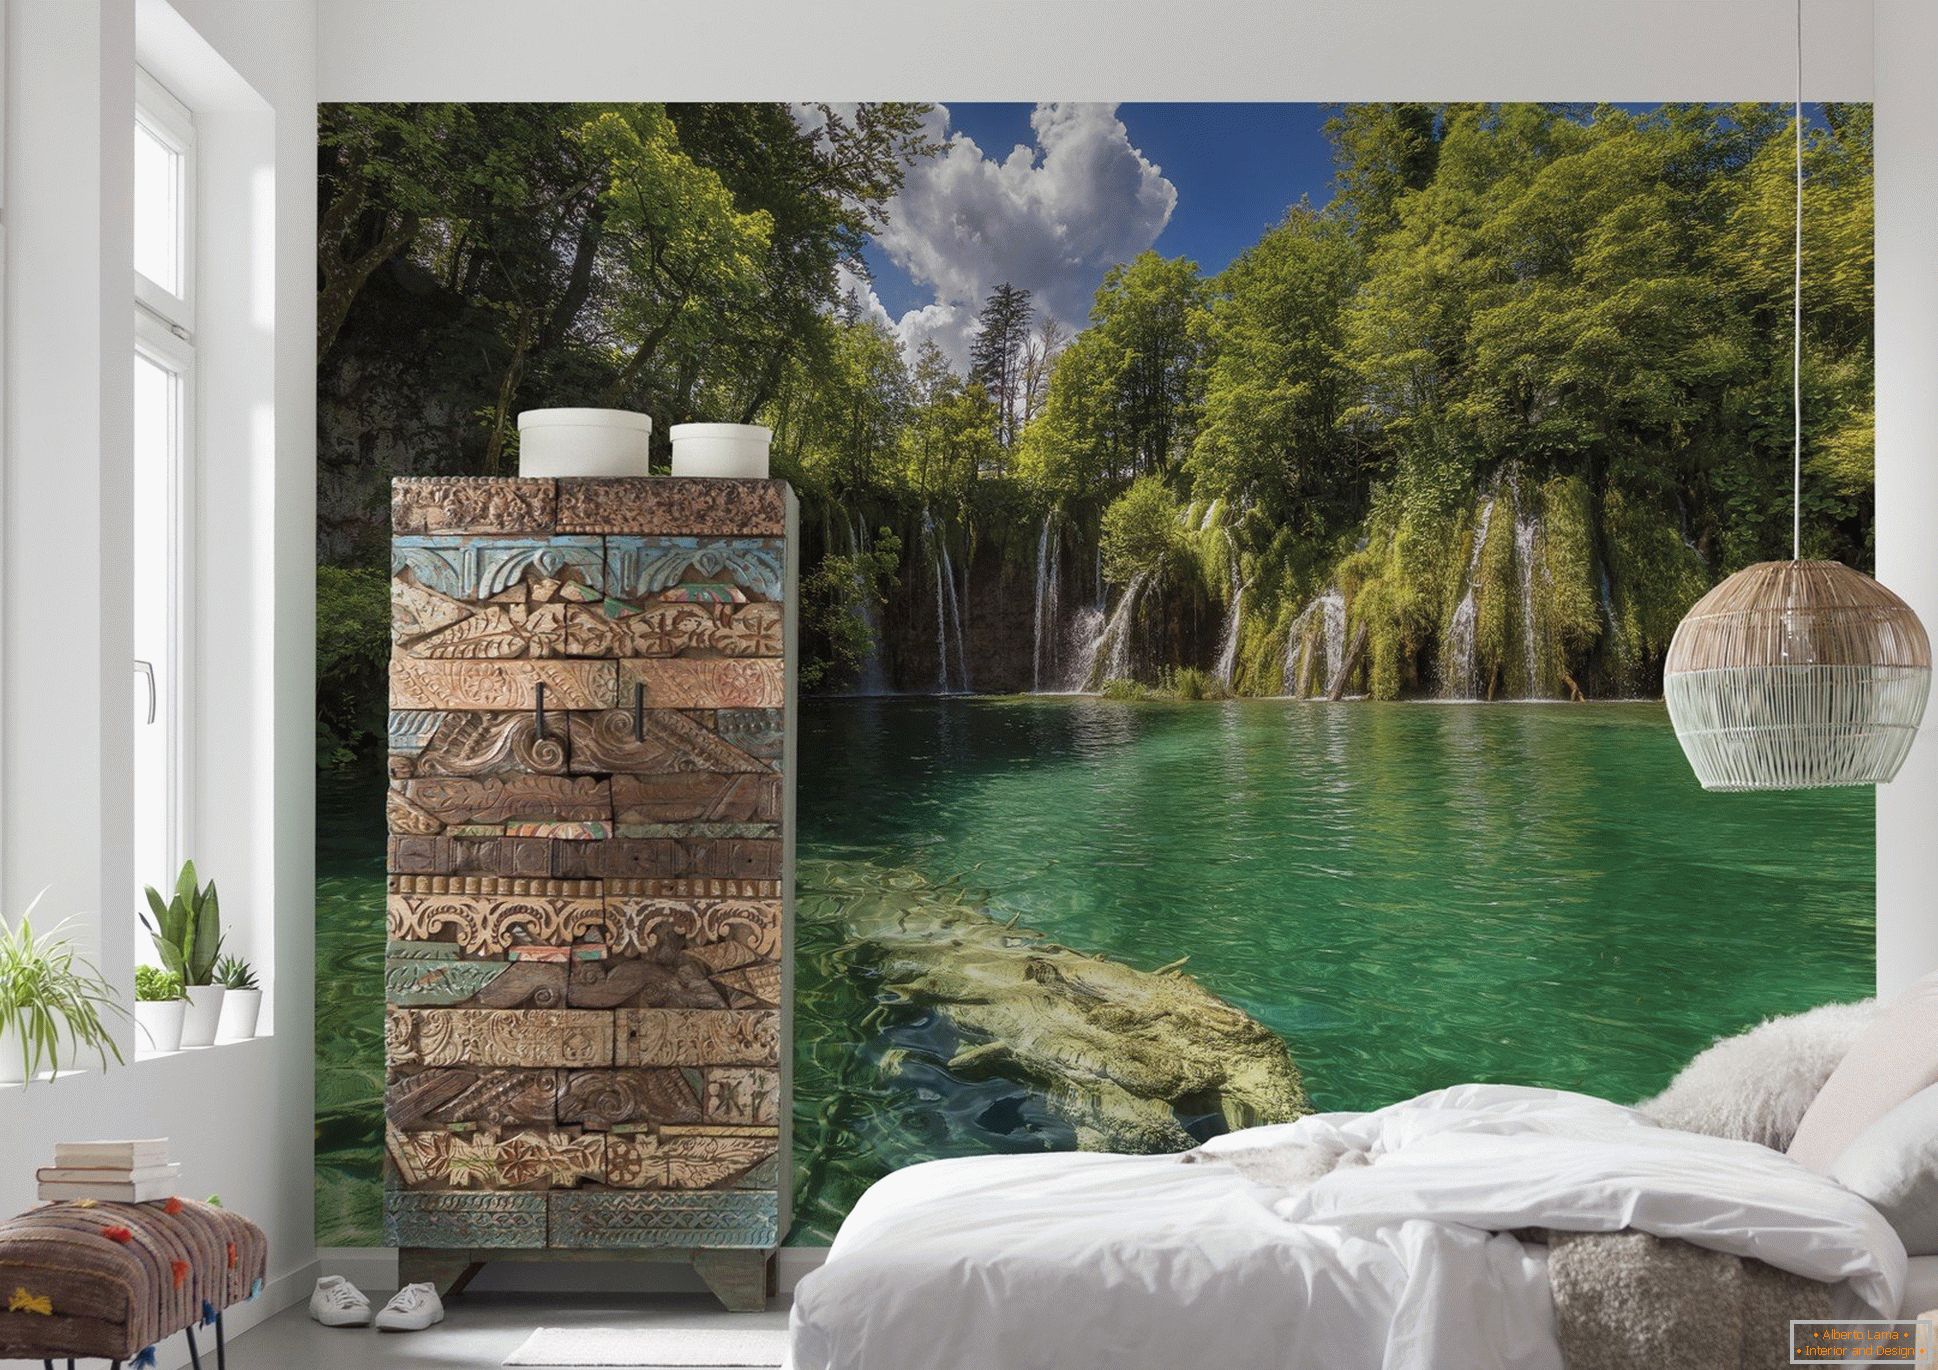 Papéis de parede de fotos com um lago e árvores